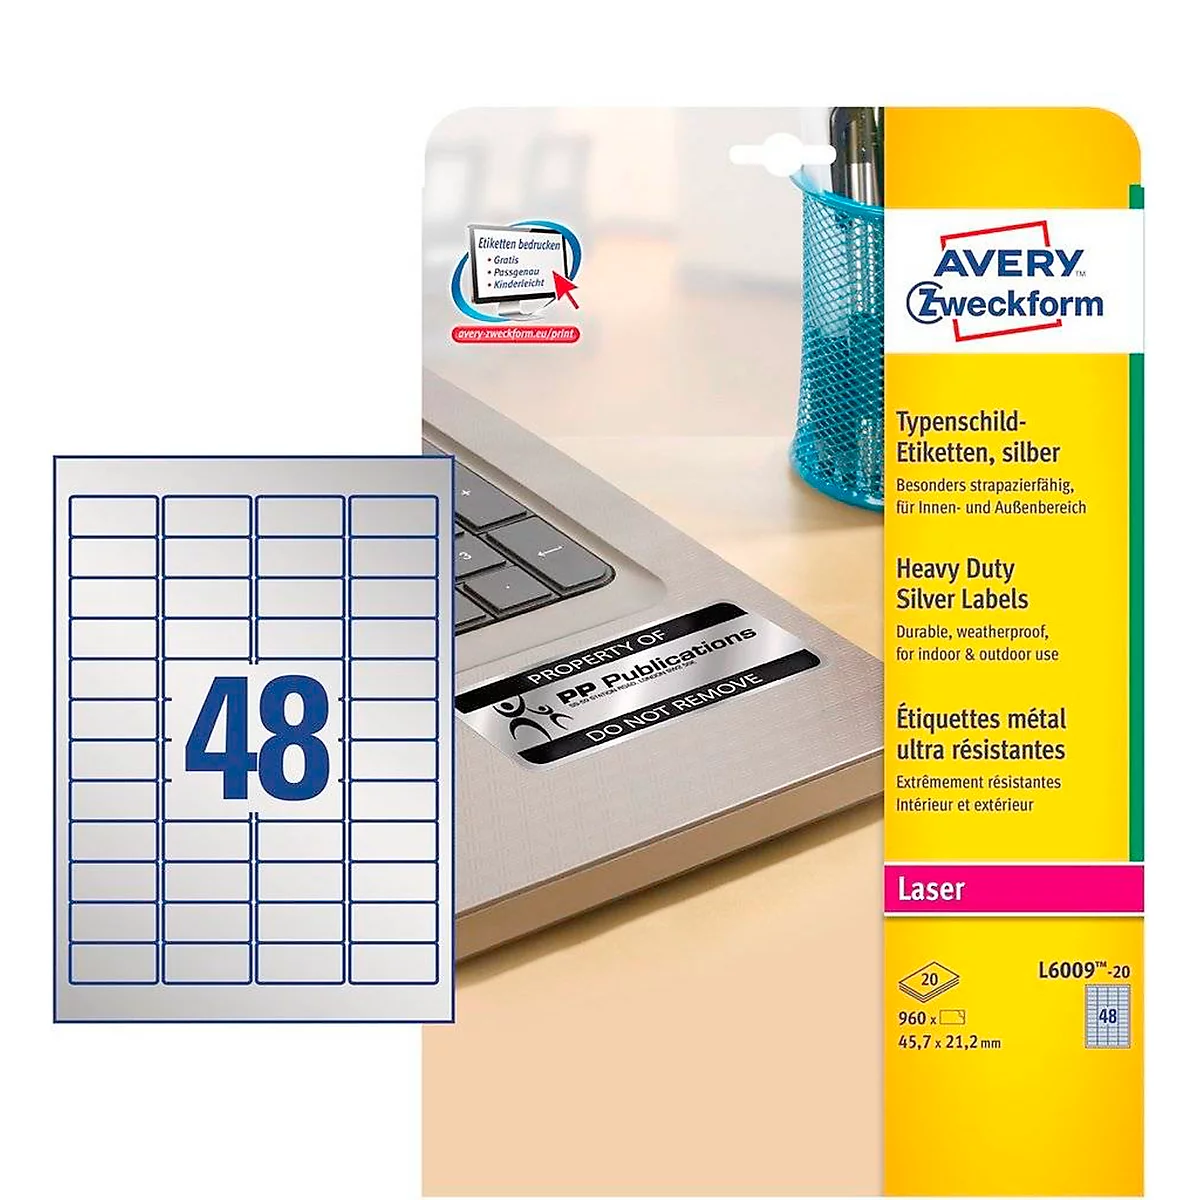 Avery Zweckform Typenschildetiketten L6009-20, extrem robust, geeignet für SW-Laserdrucker, 45,7x 21,2 mm, 960 Stück/20 A4-Bogen, Polyesterfolie, silber